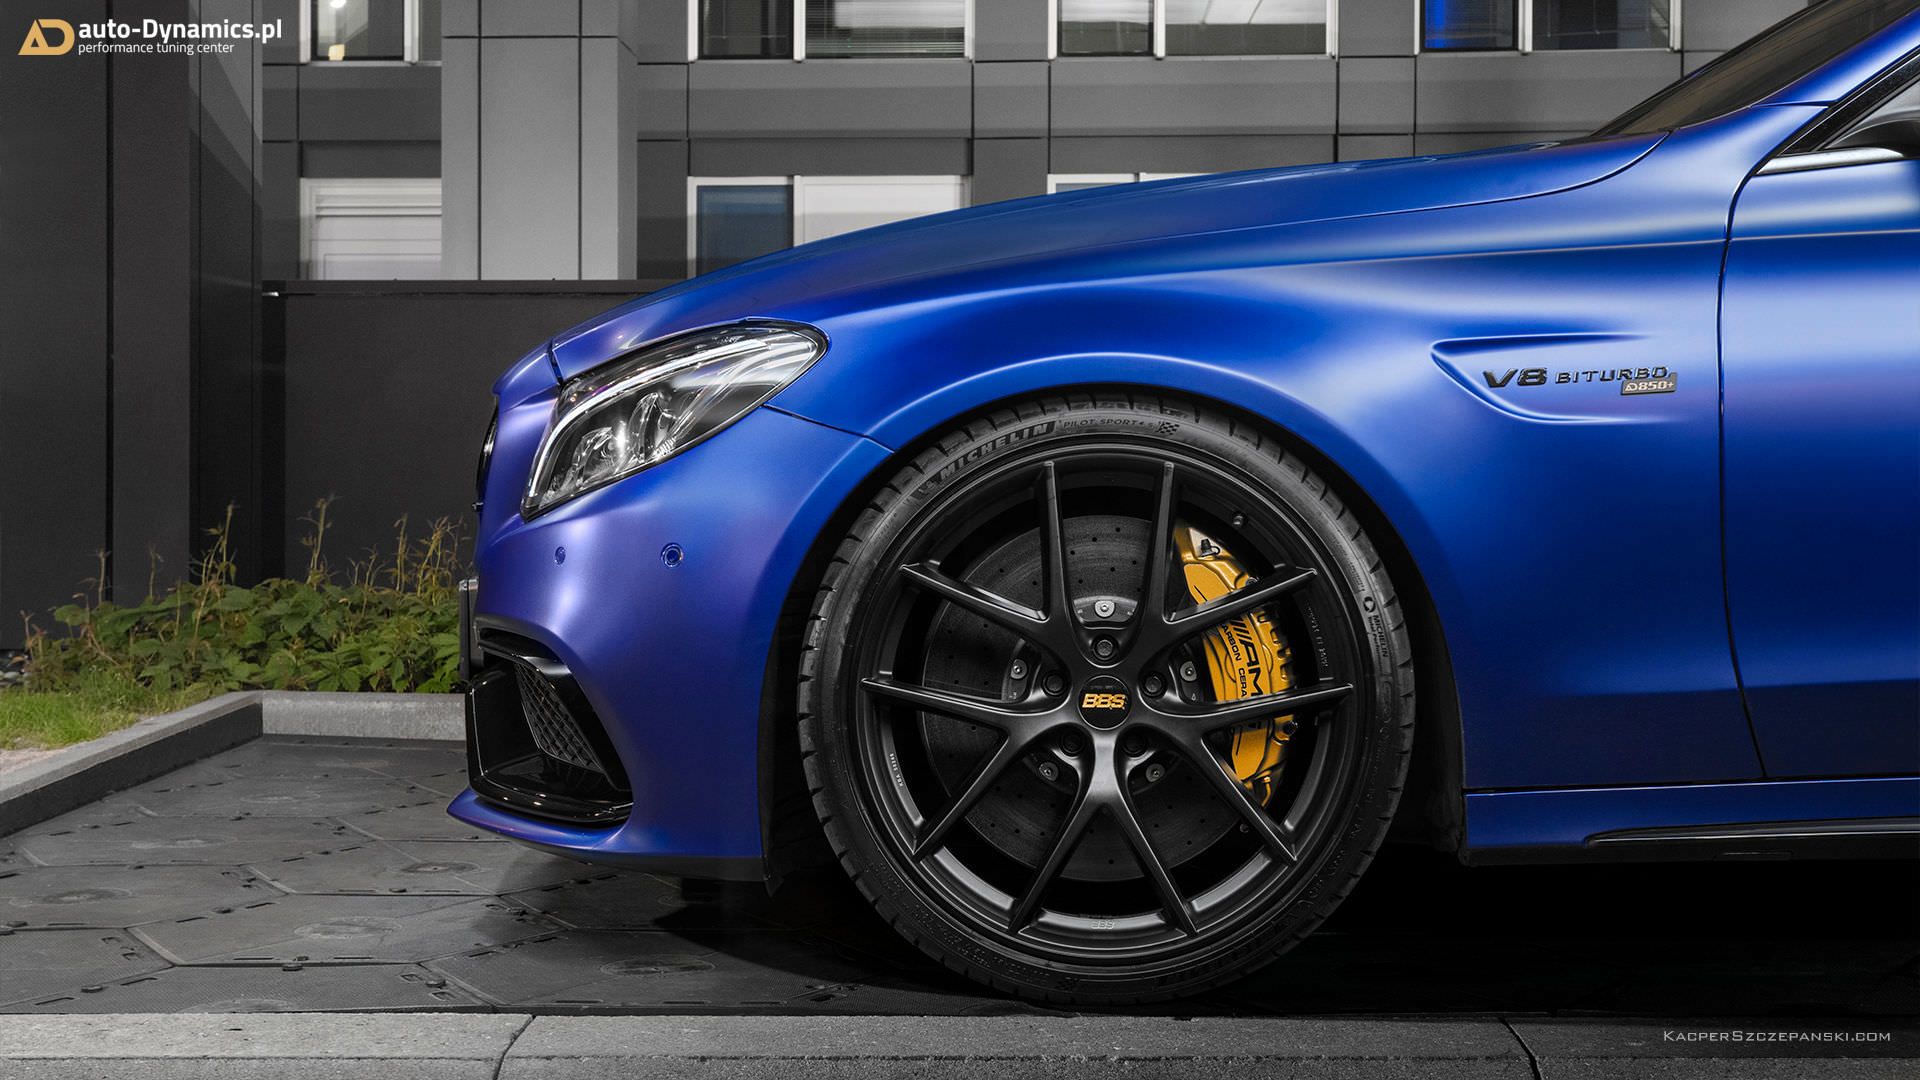 نمای چرخ جلو و رینگ خودرو مرسدس بنز / Mercedes-AMG C63 S آبی رنگ با تیونینگ اتوداینامیکس